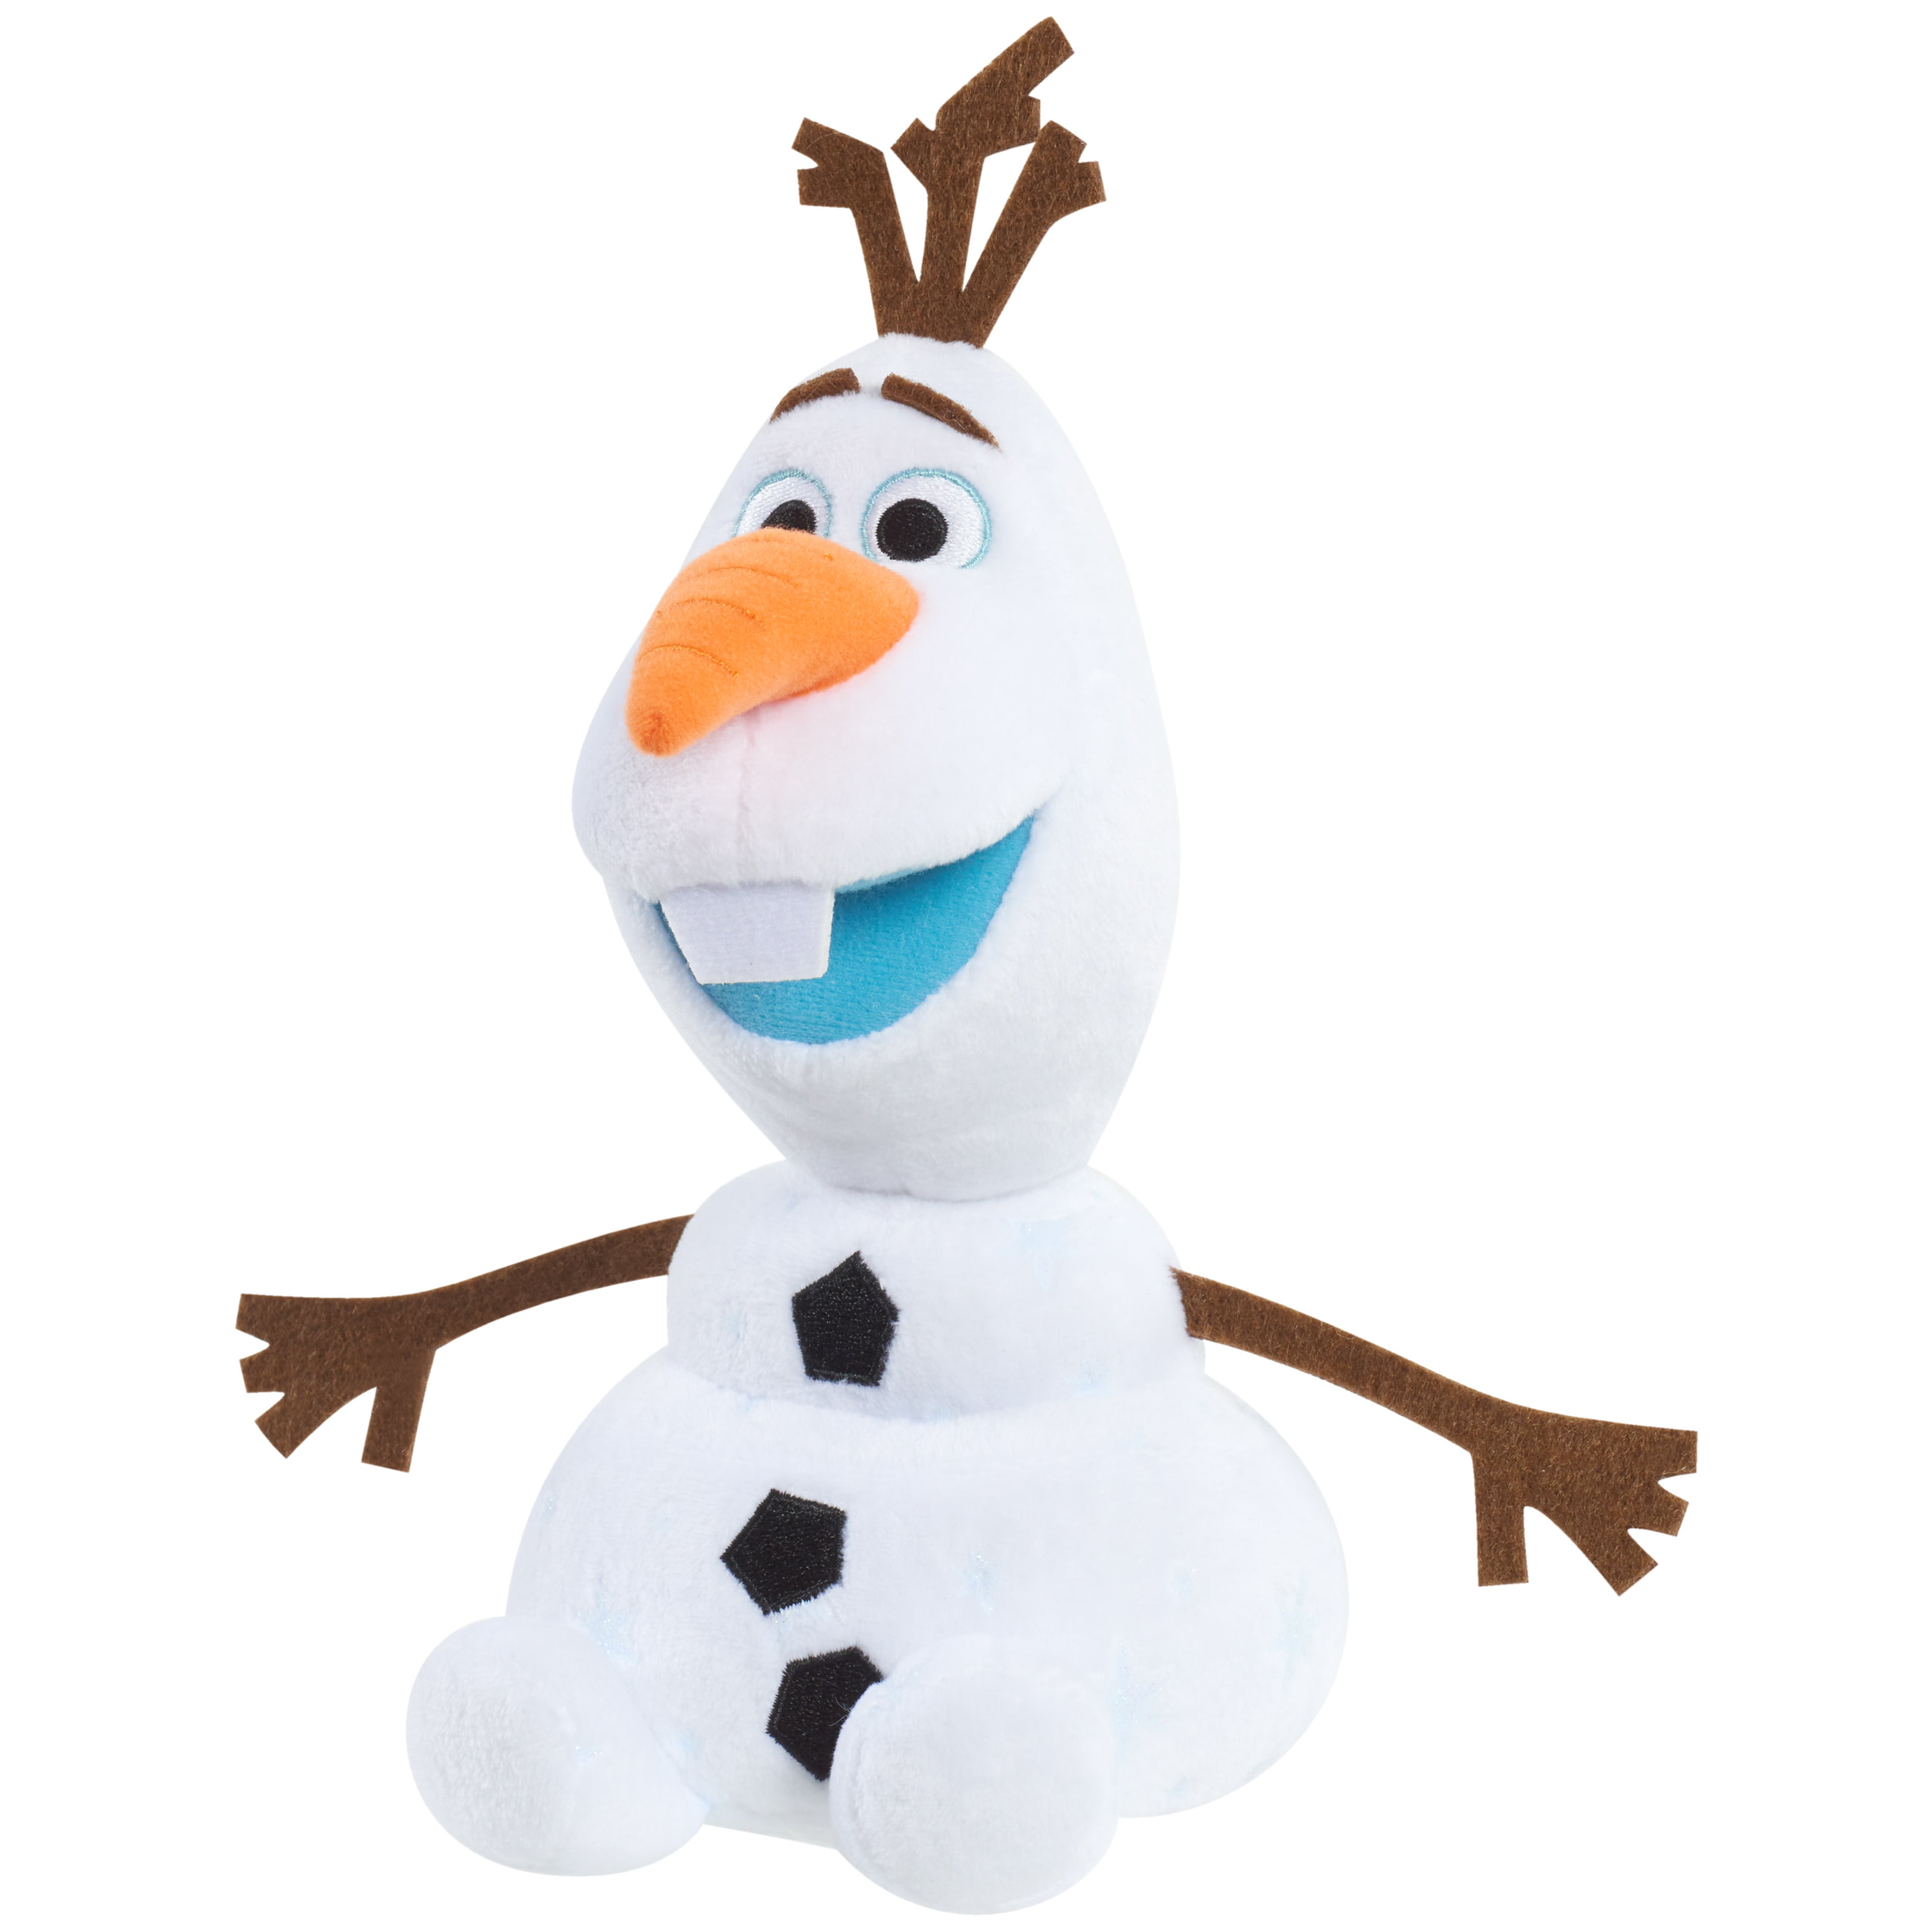 Details about   Disney Collection Frozen Plush Olaf Snowman 15" Authentic 